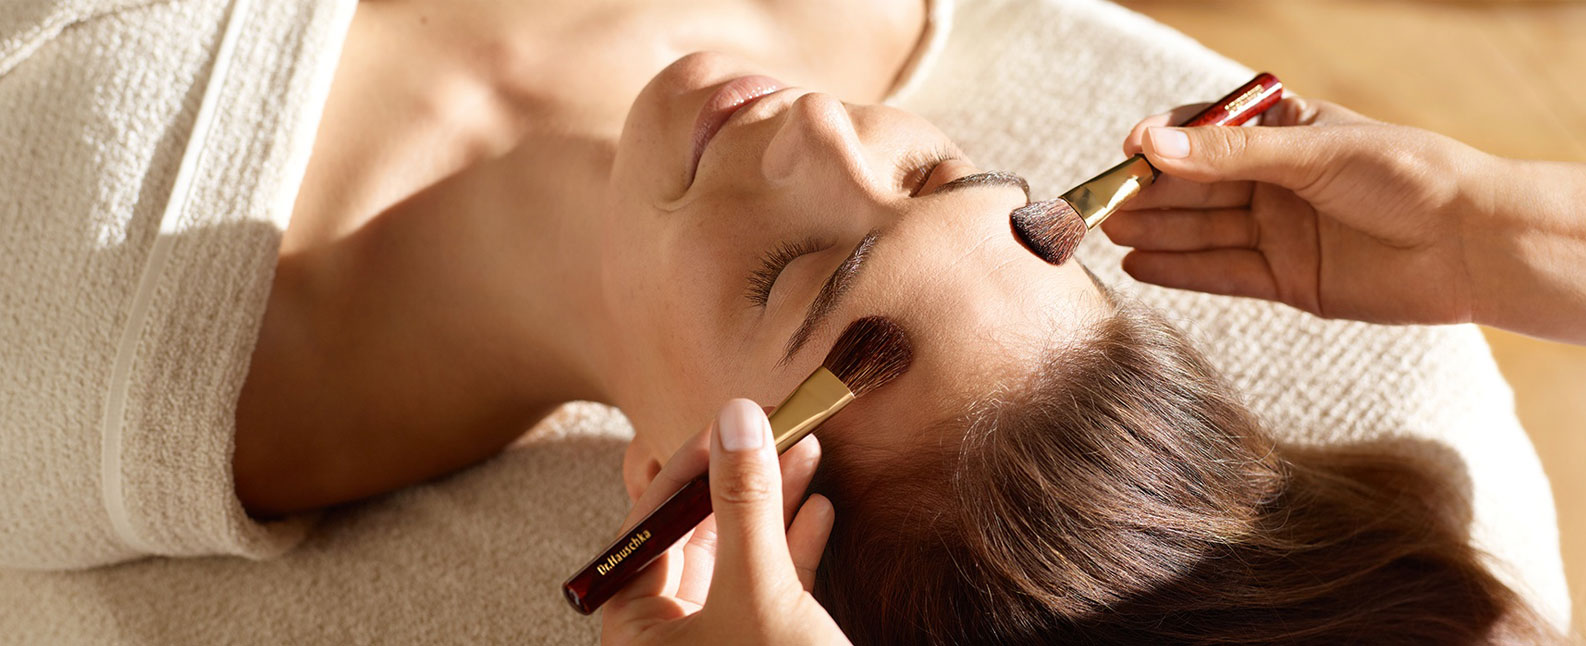 Entspannt liegende Frau bekommt Behandlung mit Pinseln im Gesicht